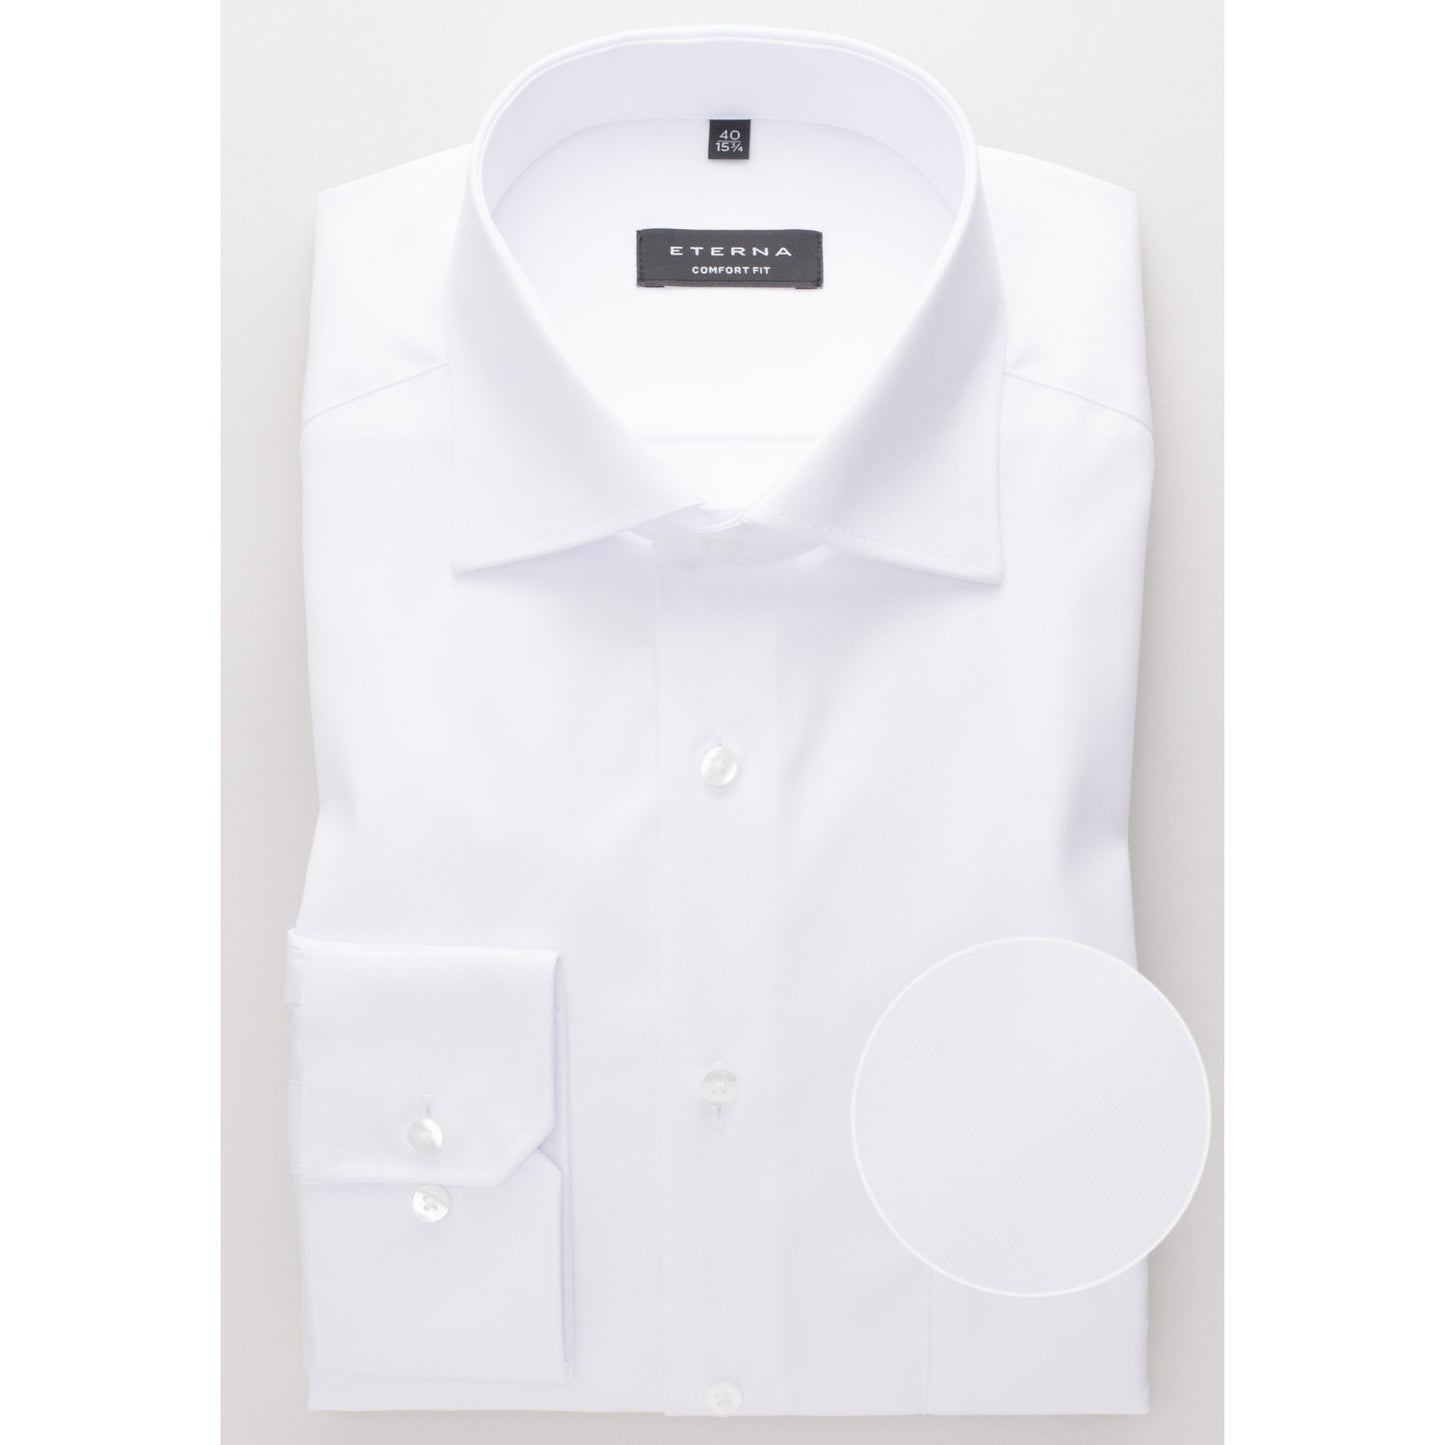 Eterna 8817 00 E19K White Comfort Fit Long Sleeve Shirt